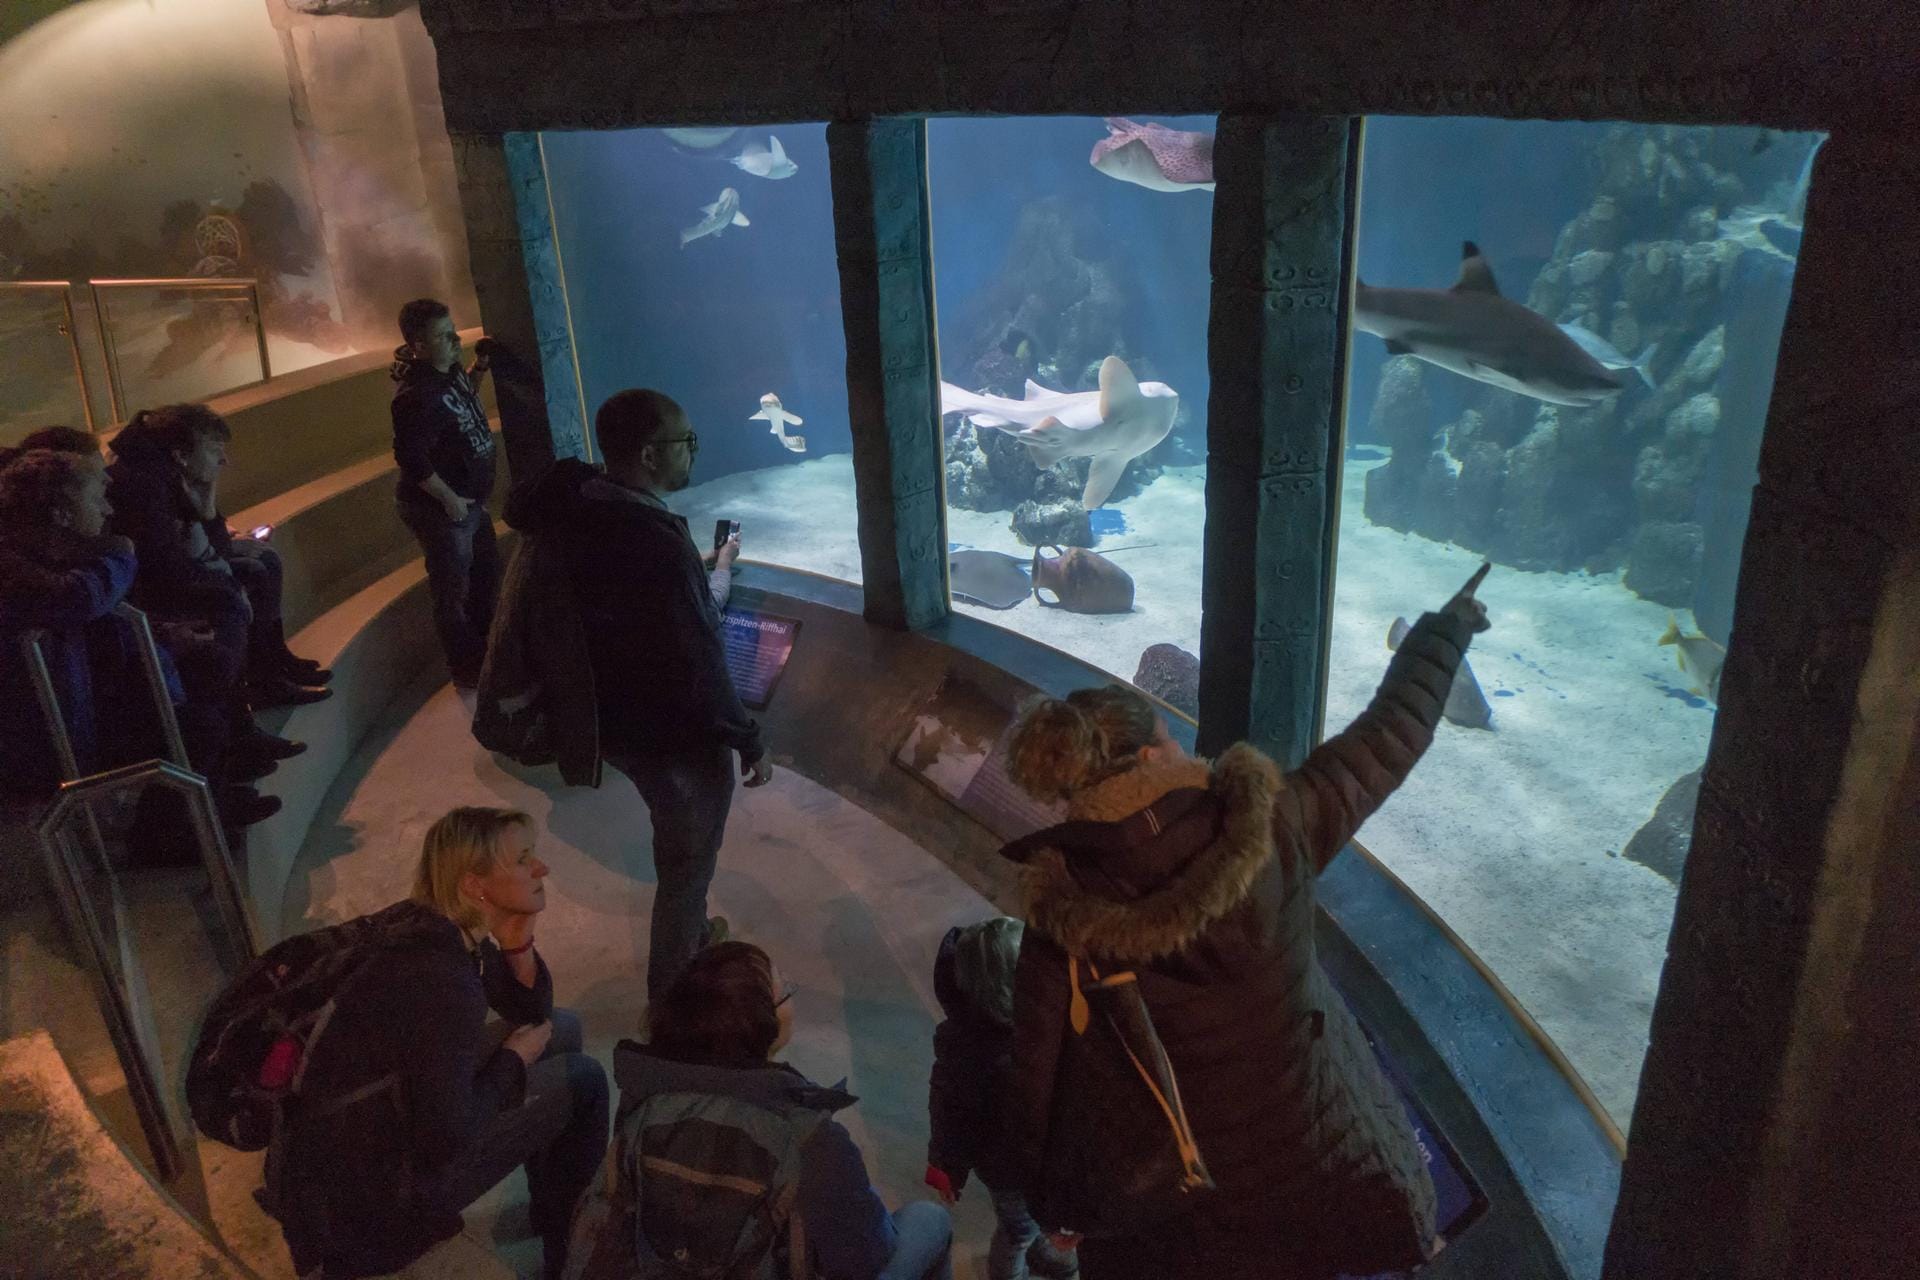 Das Sylt Aquarium im Süden der Stadt Westerland auf Sylt ist ein zoologischer Garten, der sich auf Fische aus der Nordsee sowie tropische Fische aus Korallenriffen spezialisiert hat. Es bezieht sein Frischwasser durch eine direkte Rohrleitung aus der Nordsee.